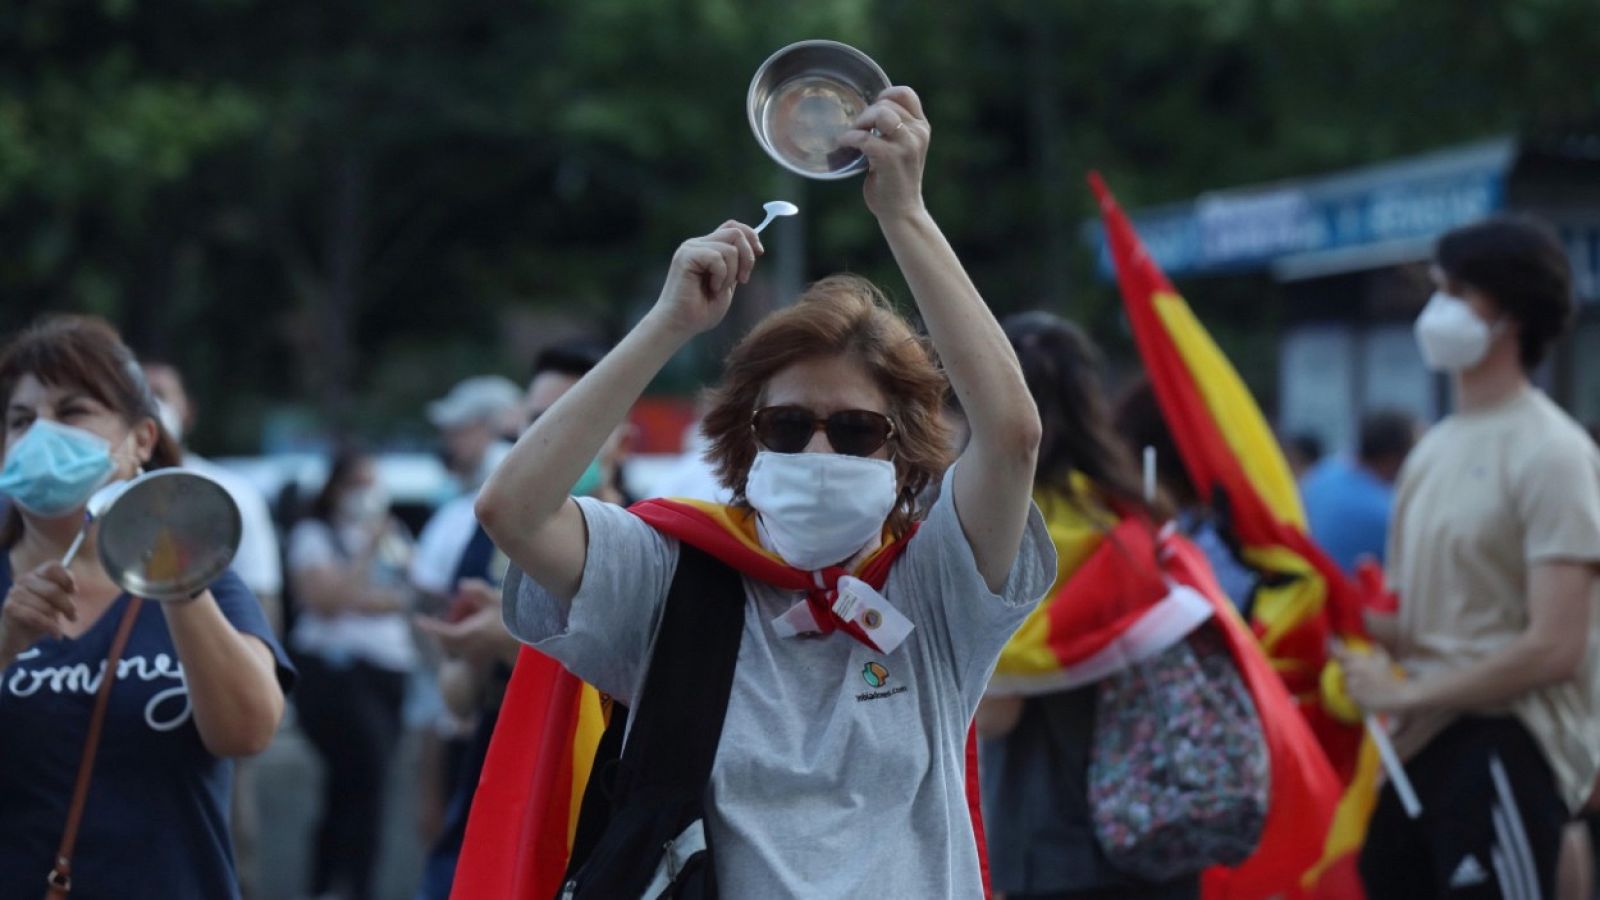 Coronavirus | Montero: "La convocatoria de manifestaciones demuestra se permite un ejercicio de libertad"